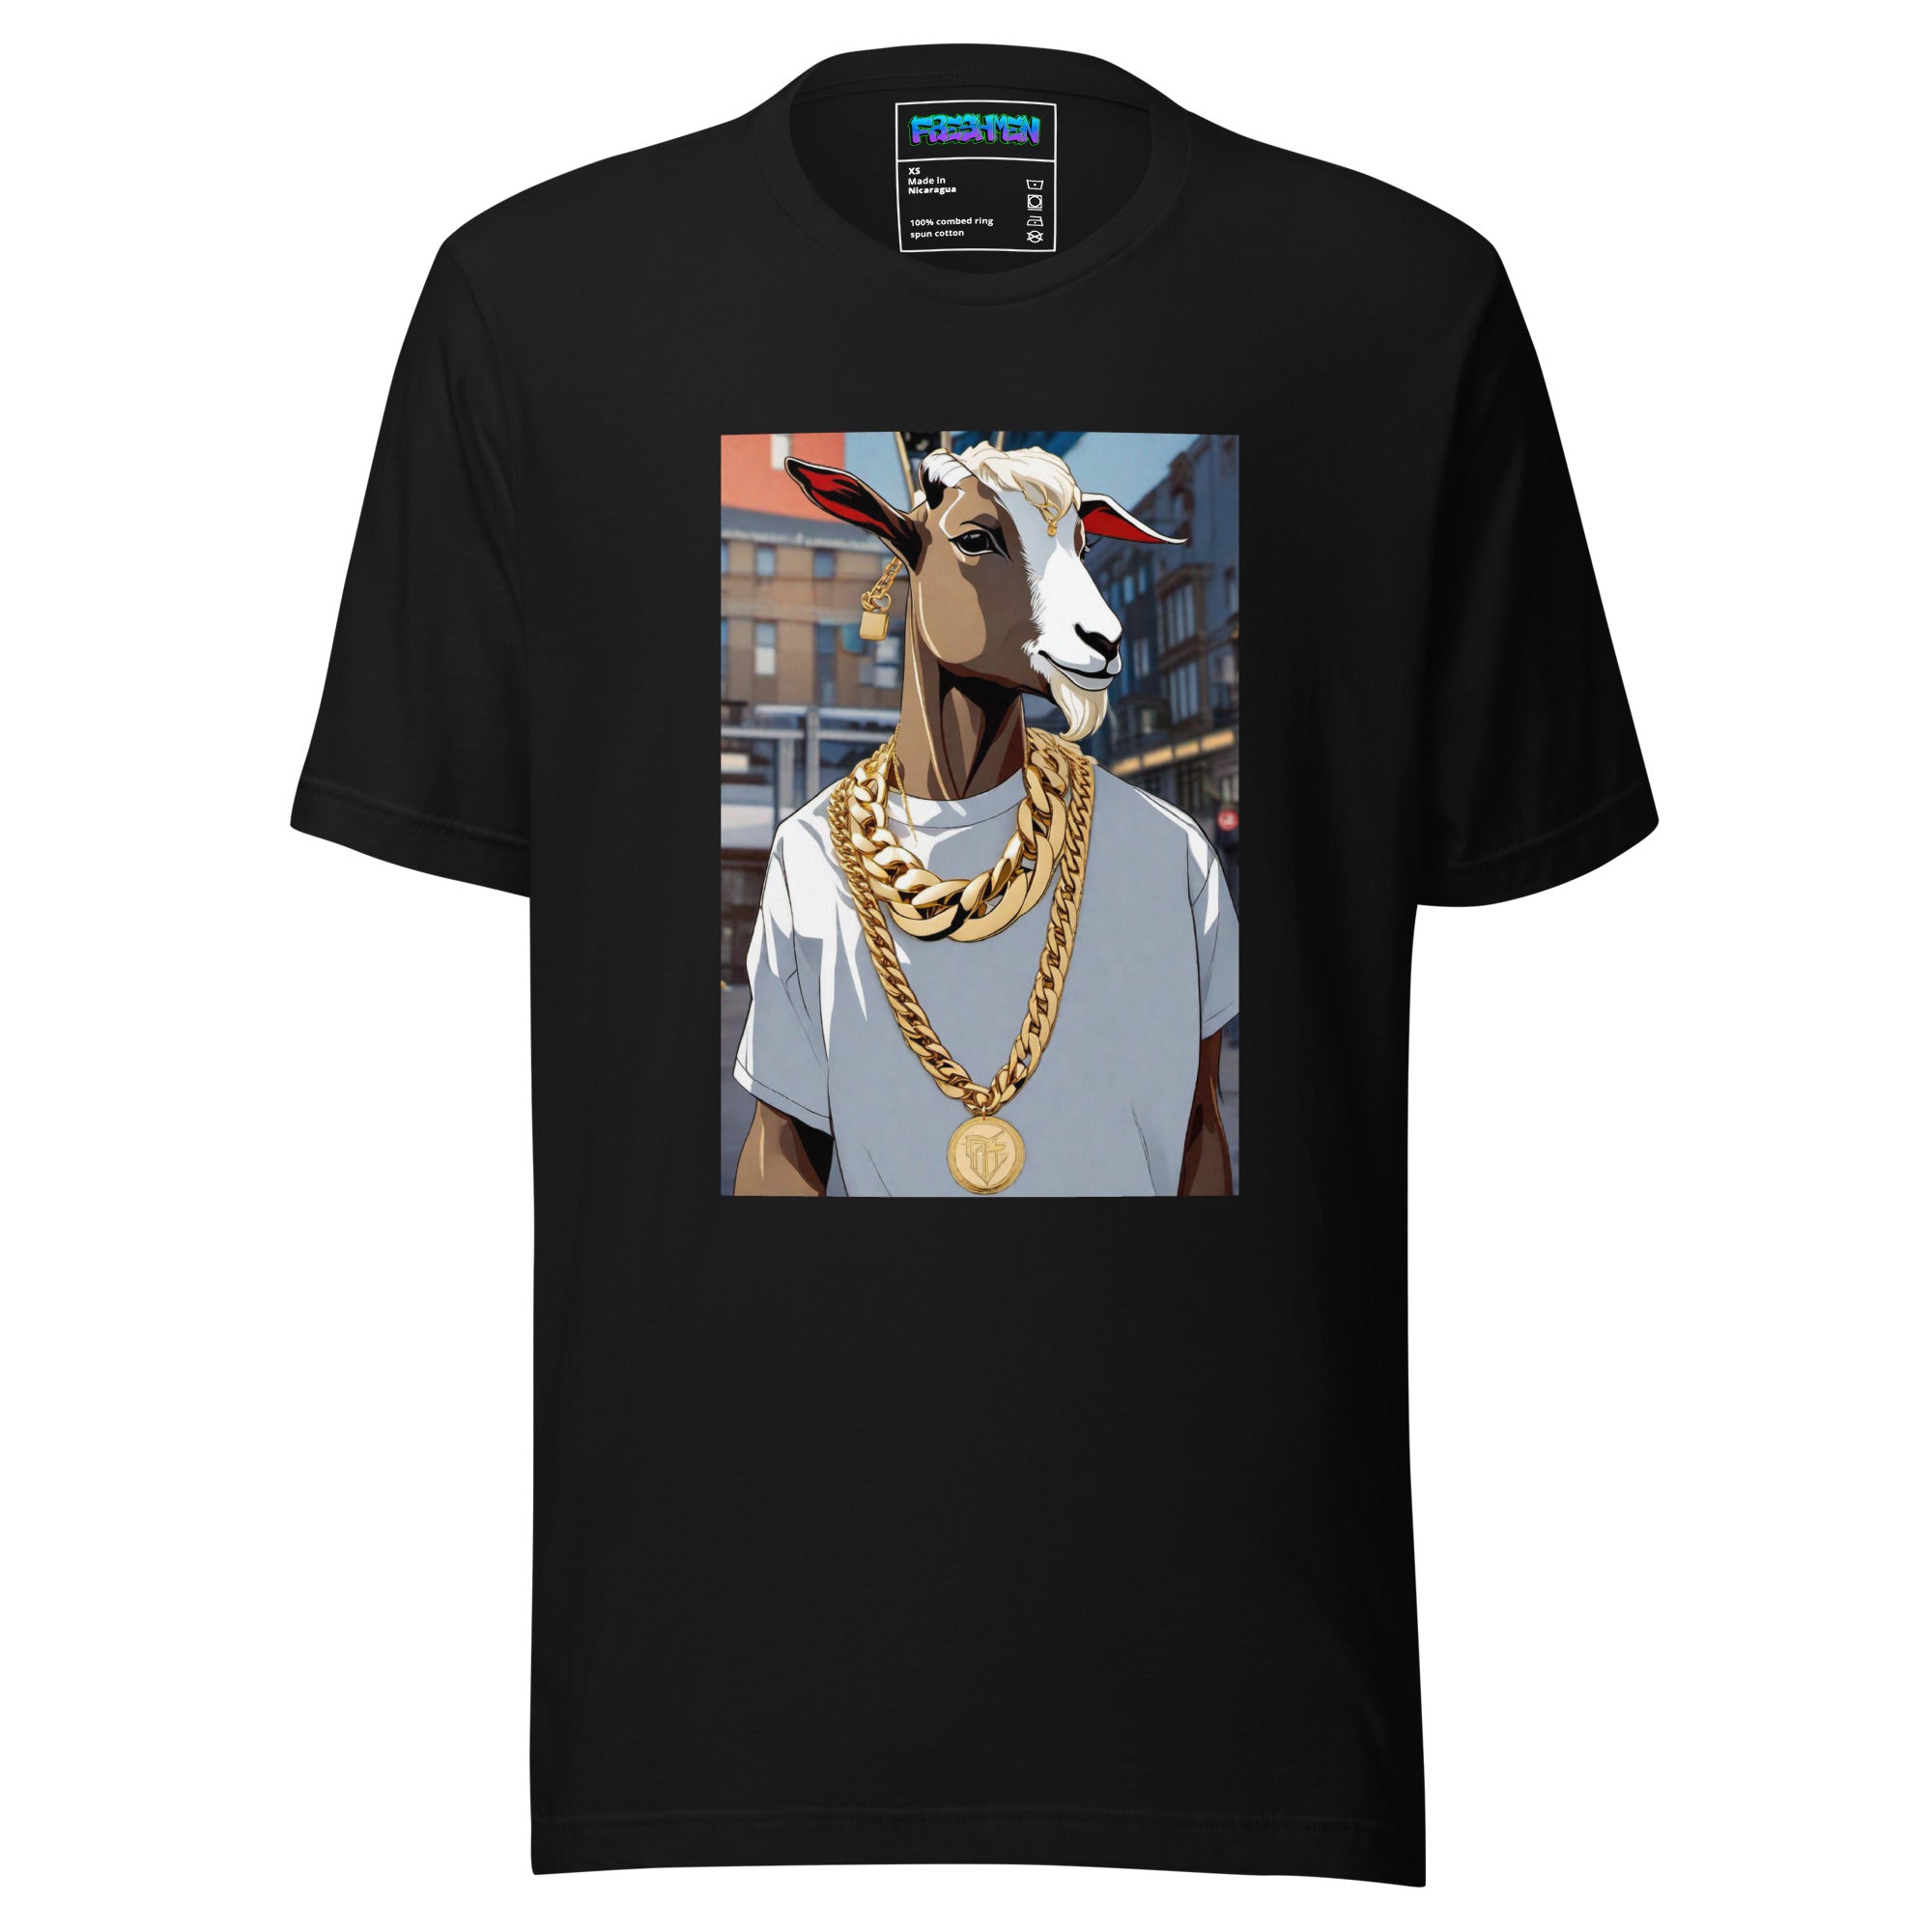 Freshmen Goat Lifestyle Unisex T-Shirt